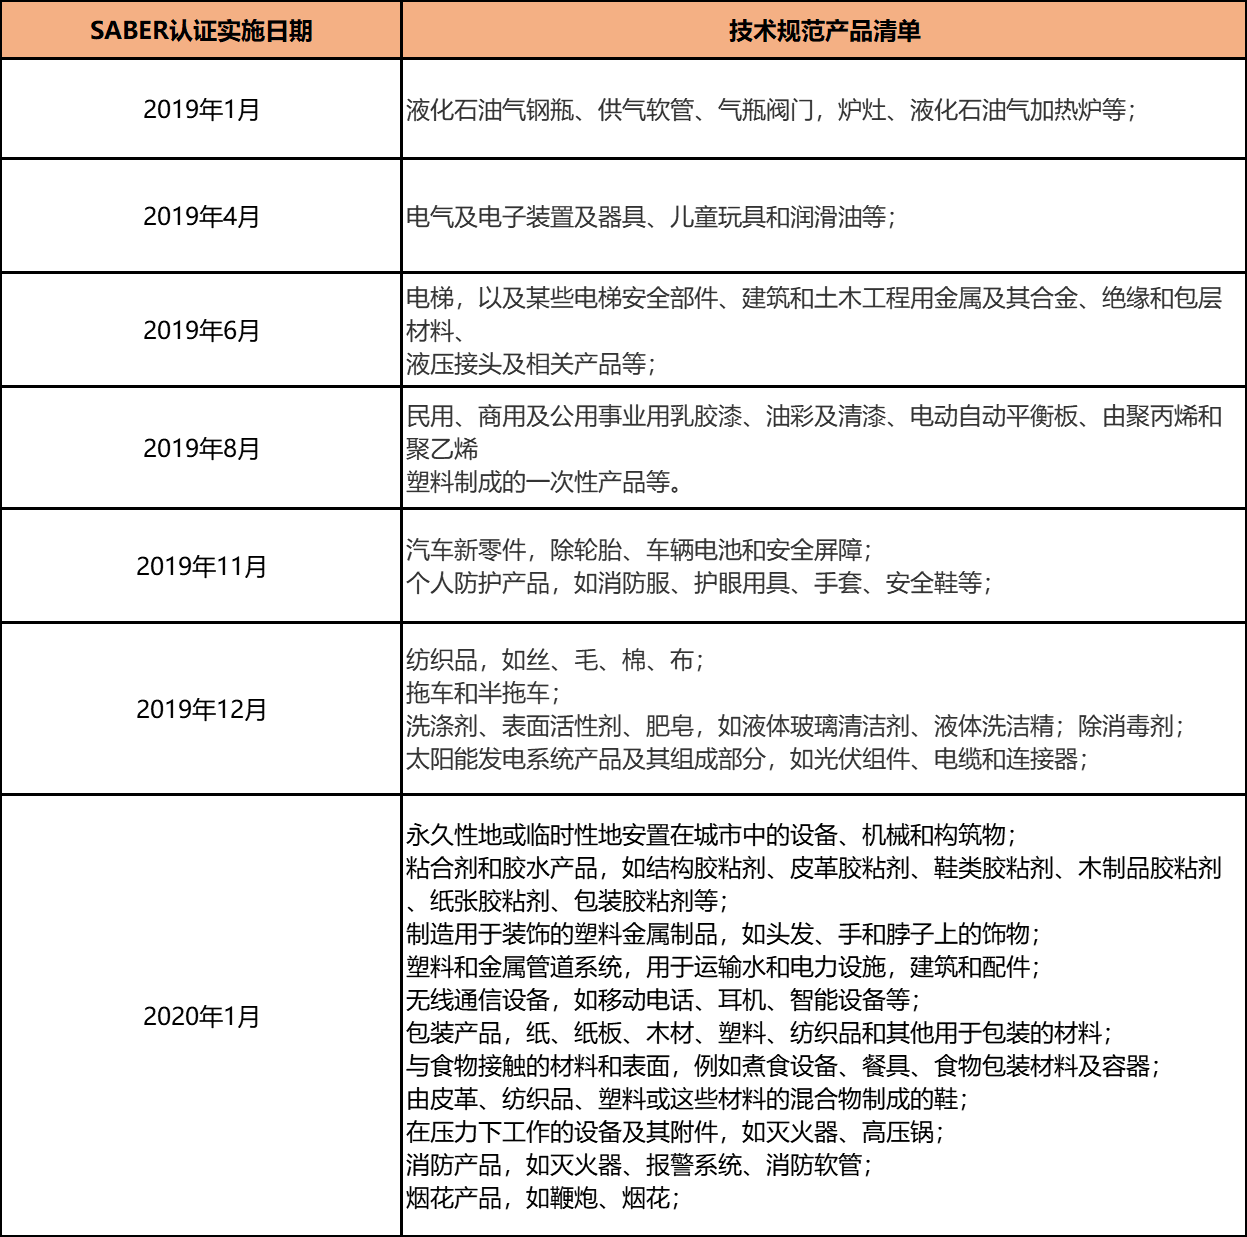 产品清单（中文版）.png